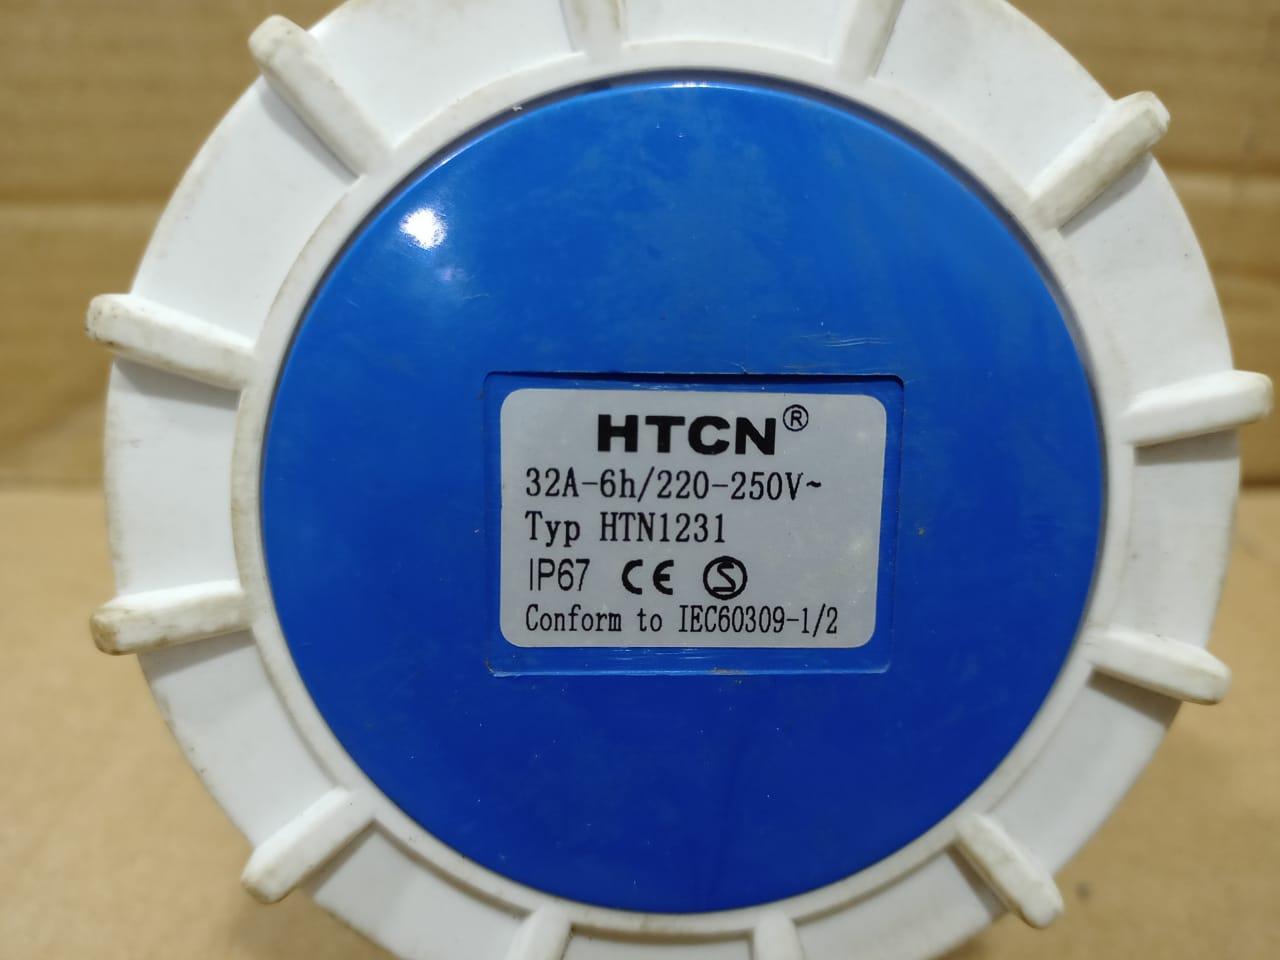 HTCN HTN1231 Electrical Wall Socket